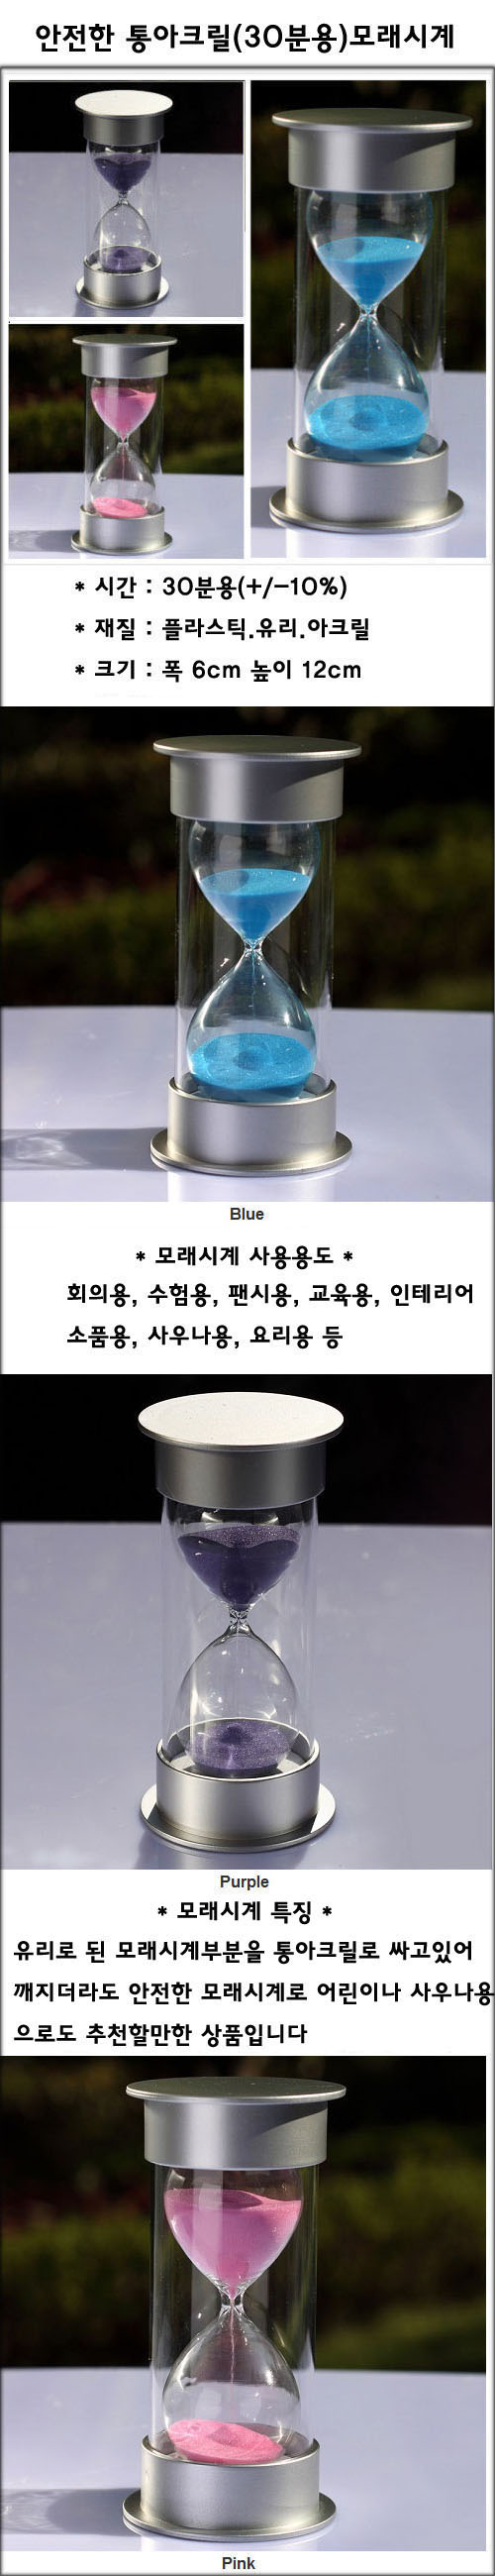 안전한 플라스틱 통아크릴 모래시계(블루)-30분용 12,800원 - 미니클락 인테리어, 시계, 탁상시계, 물/모래시계 바보사랑 안전한 플라스틱 통아크릴 모래시계(블루)-30분용 12,800원 - 미니클락 인테리어, 시계, 탁상시계, 물/모래시계 바보사랑